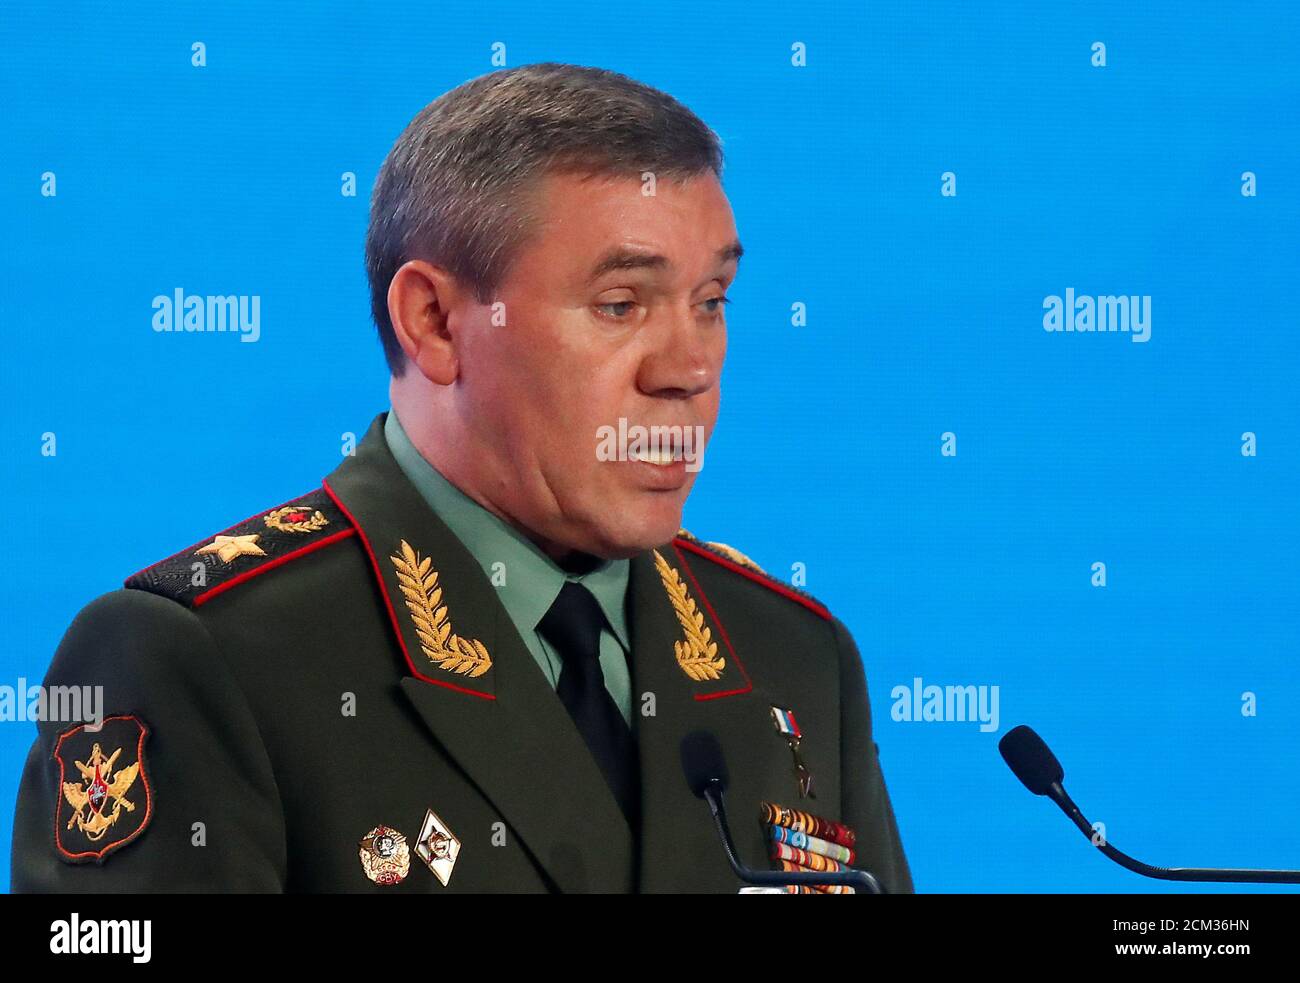 El Jefe del Estado mayor de las Fuerzas Armadas rusas Valery Gerasimov  pronuncia un discurso durante la Conferencia Anual de Moscú sobre Seguridad  Internacional (MCI) en Moscú, Rusia, 24 de abril de